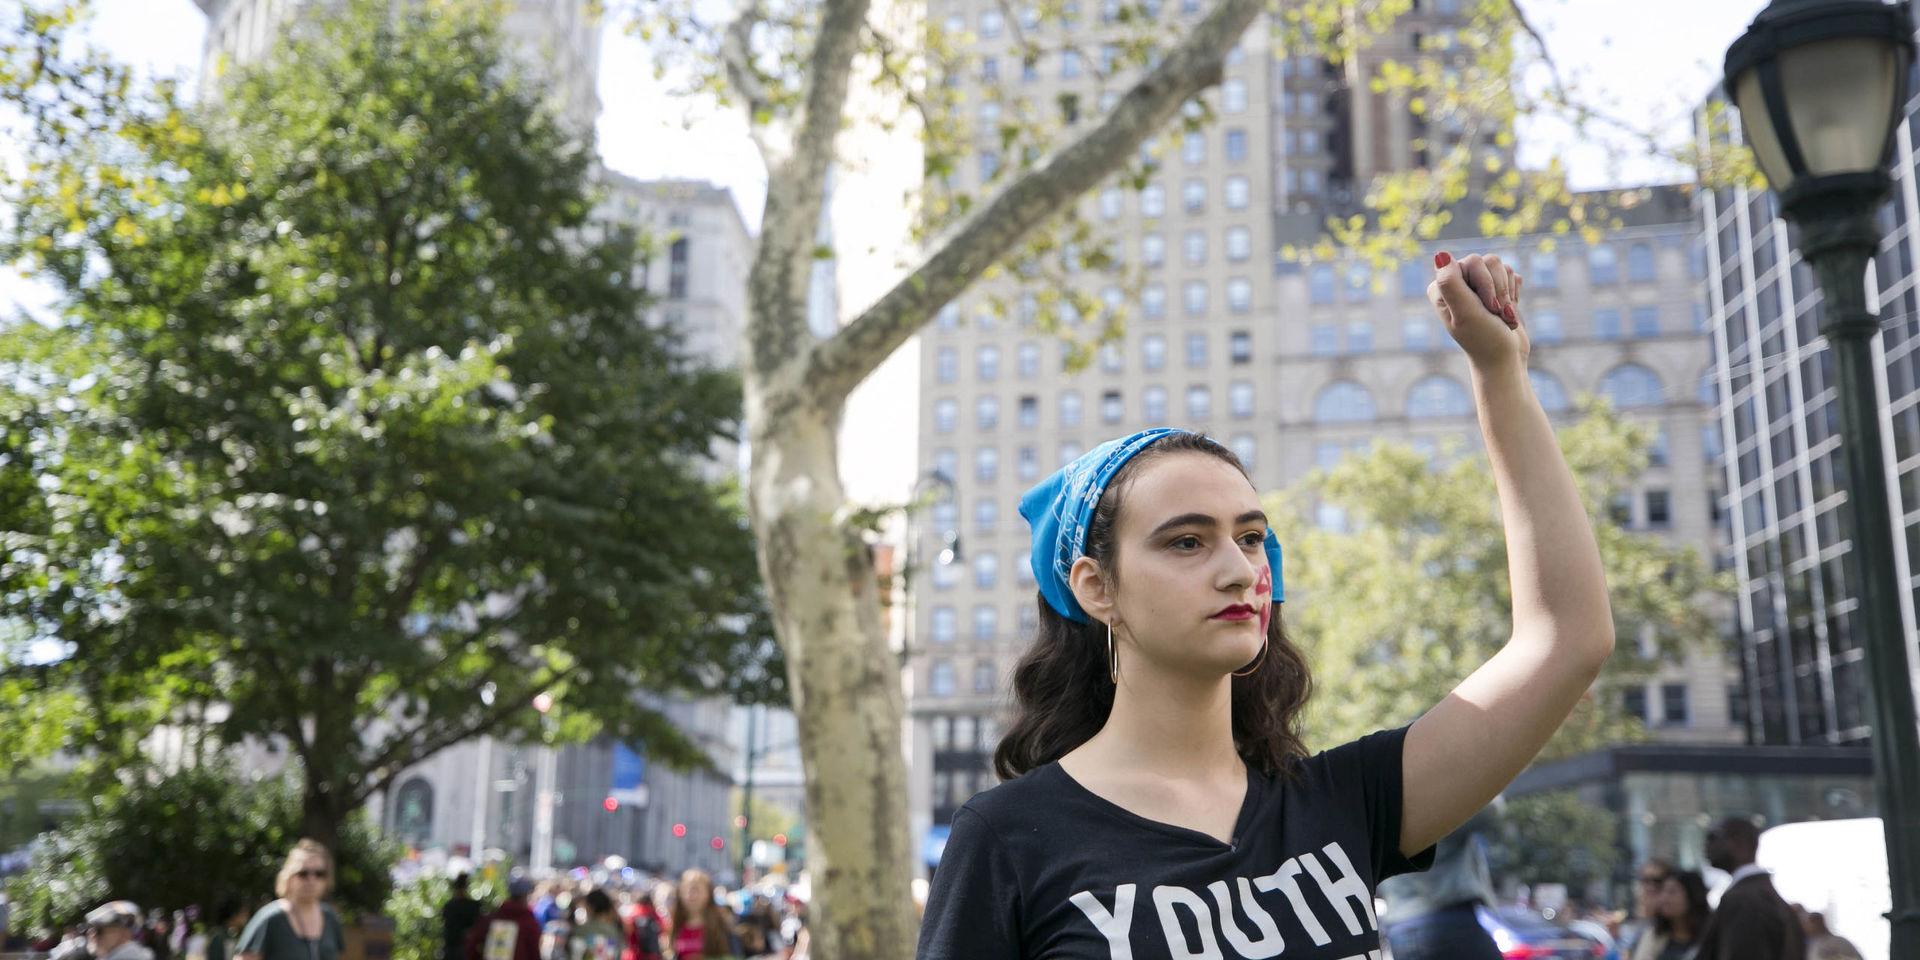 Jamie Margolin samlades tillsammans med andra demonstranter på Foley square i New York inför manifestationen.